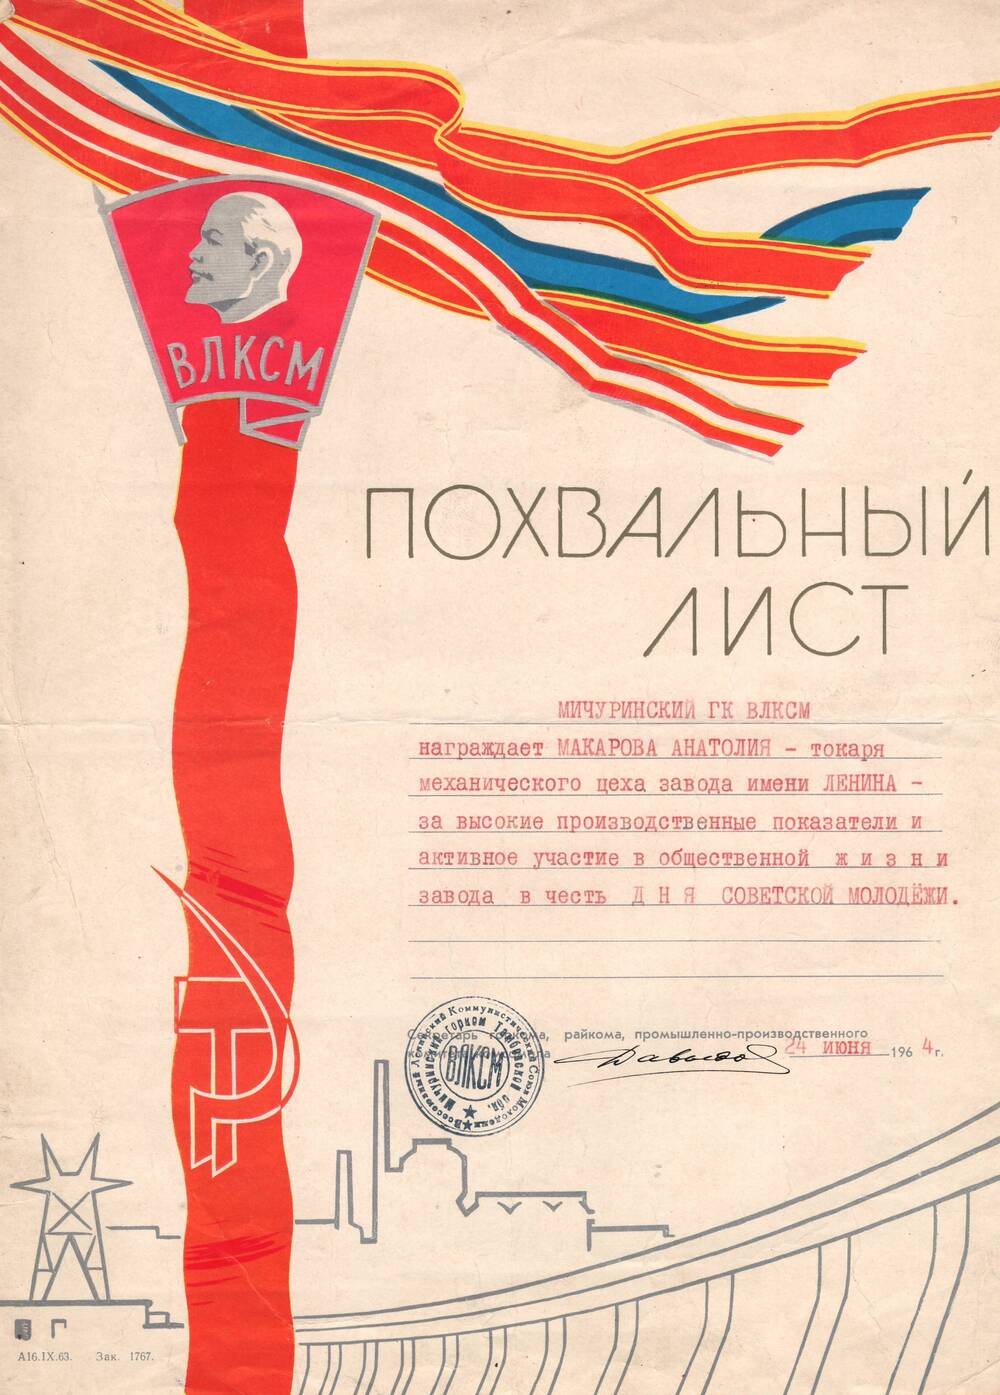 Похвальный лист Макарова Анатолия, за высокие производственные показатели и активное участие в общественной жизни завода в честь дня Советской молодежи.